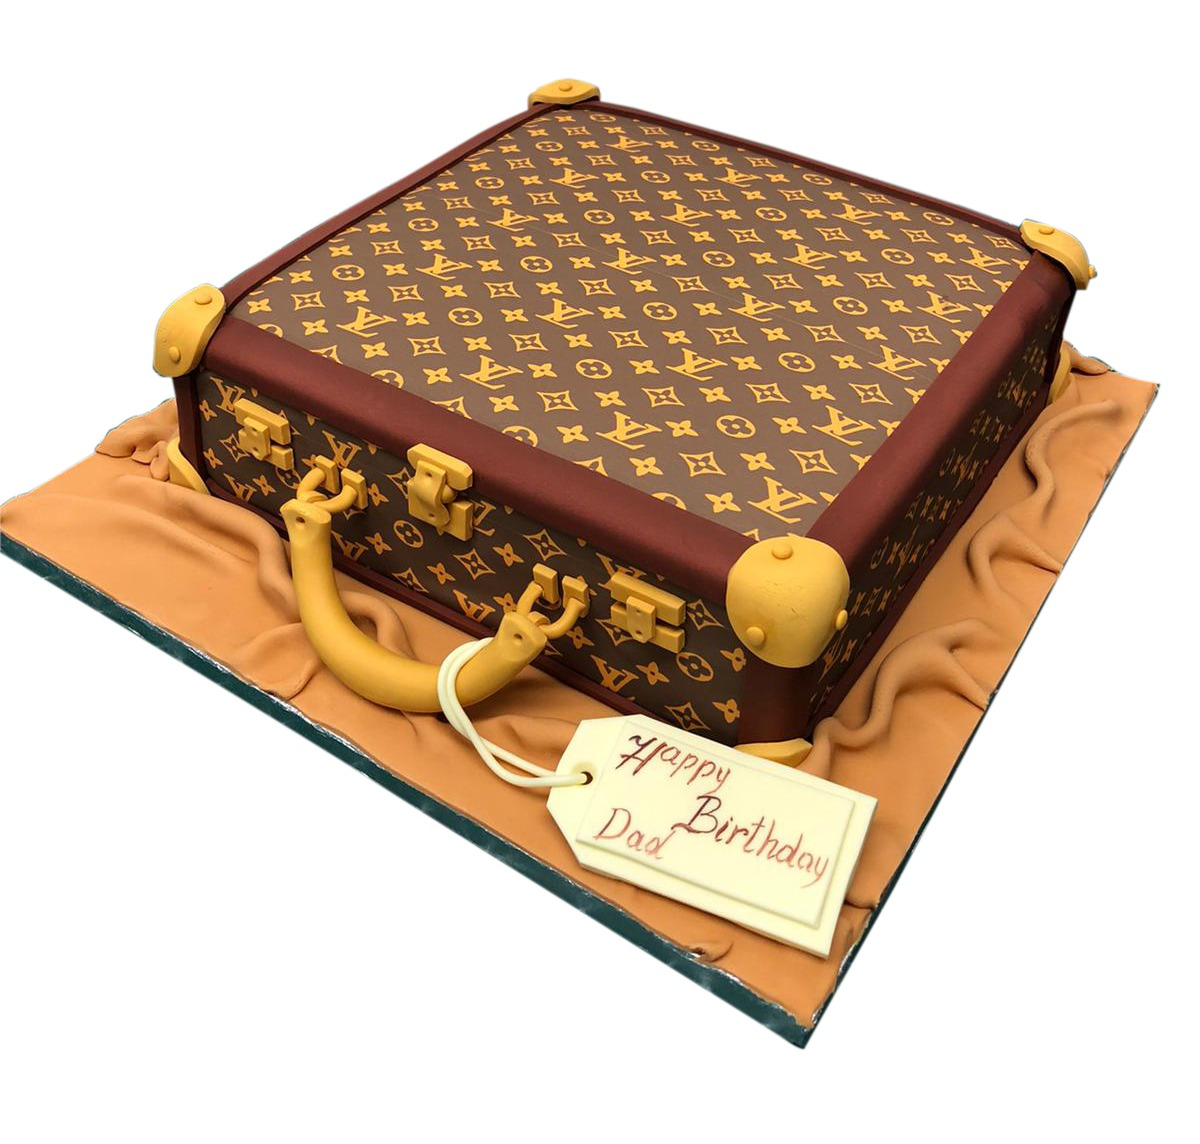 1480 - Oh, Louis! (Vuitton) - Wedding Cakes, Fresh Bakery